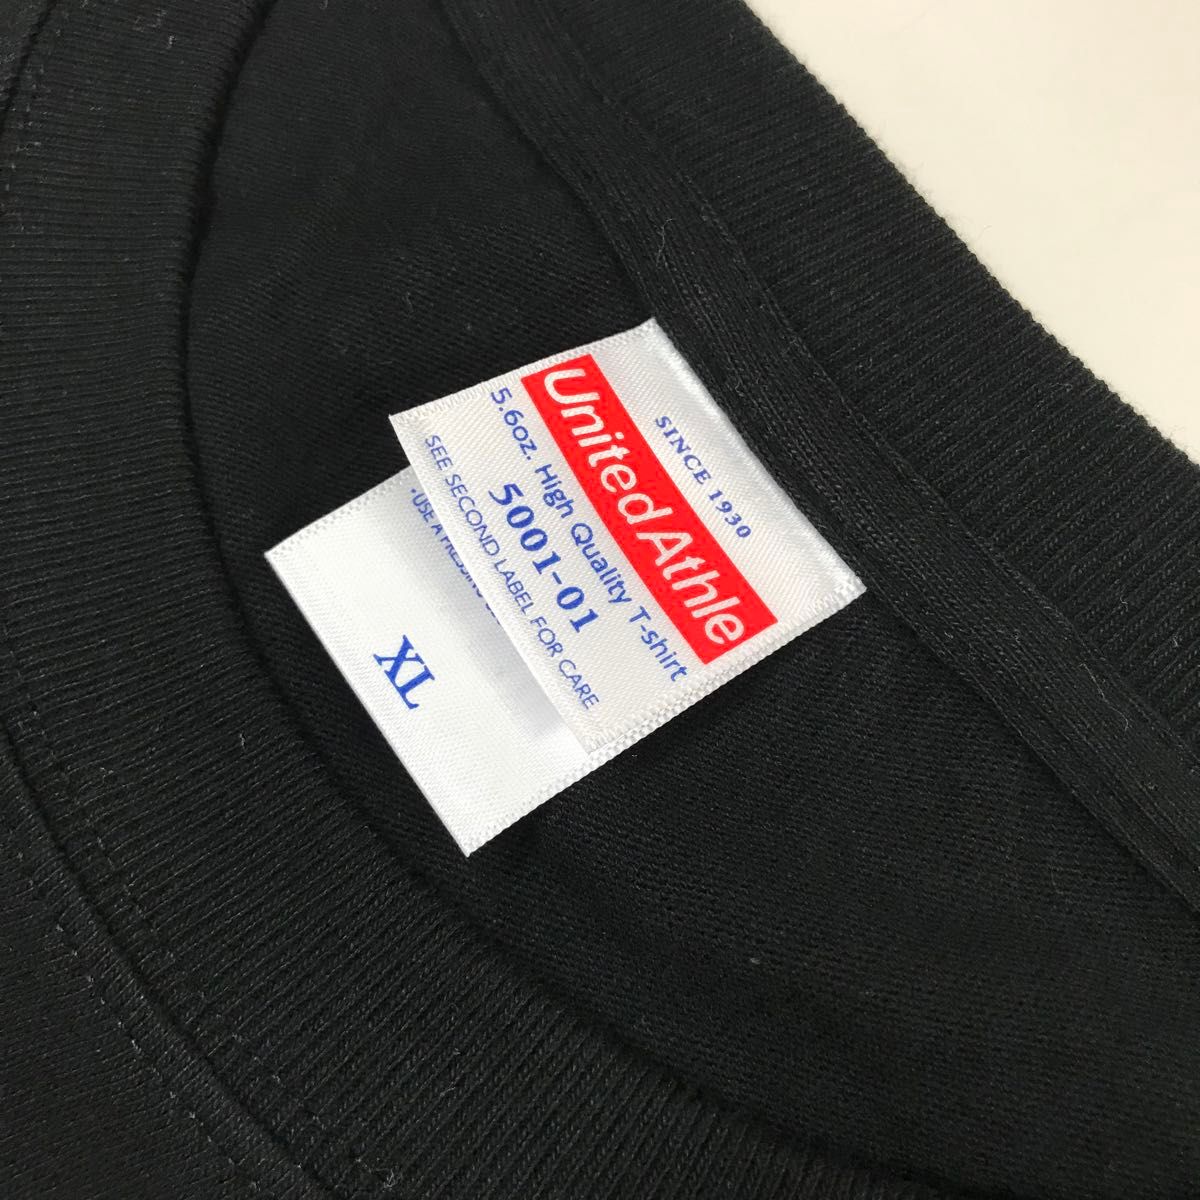 Tシャツ 半袖 5.6オンス ハイクオリティー【5001-01】XL ブラック 綿100%